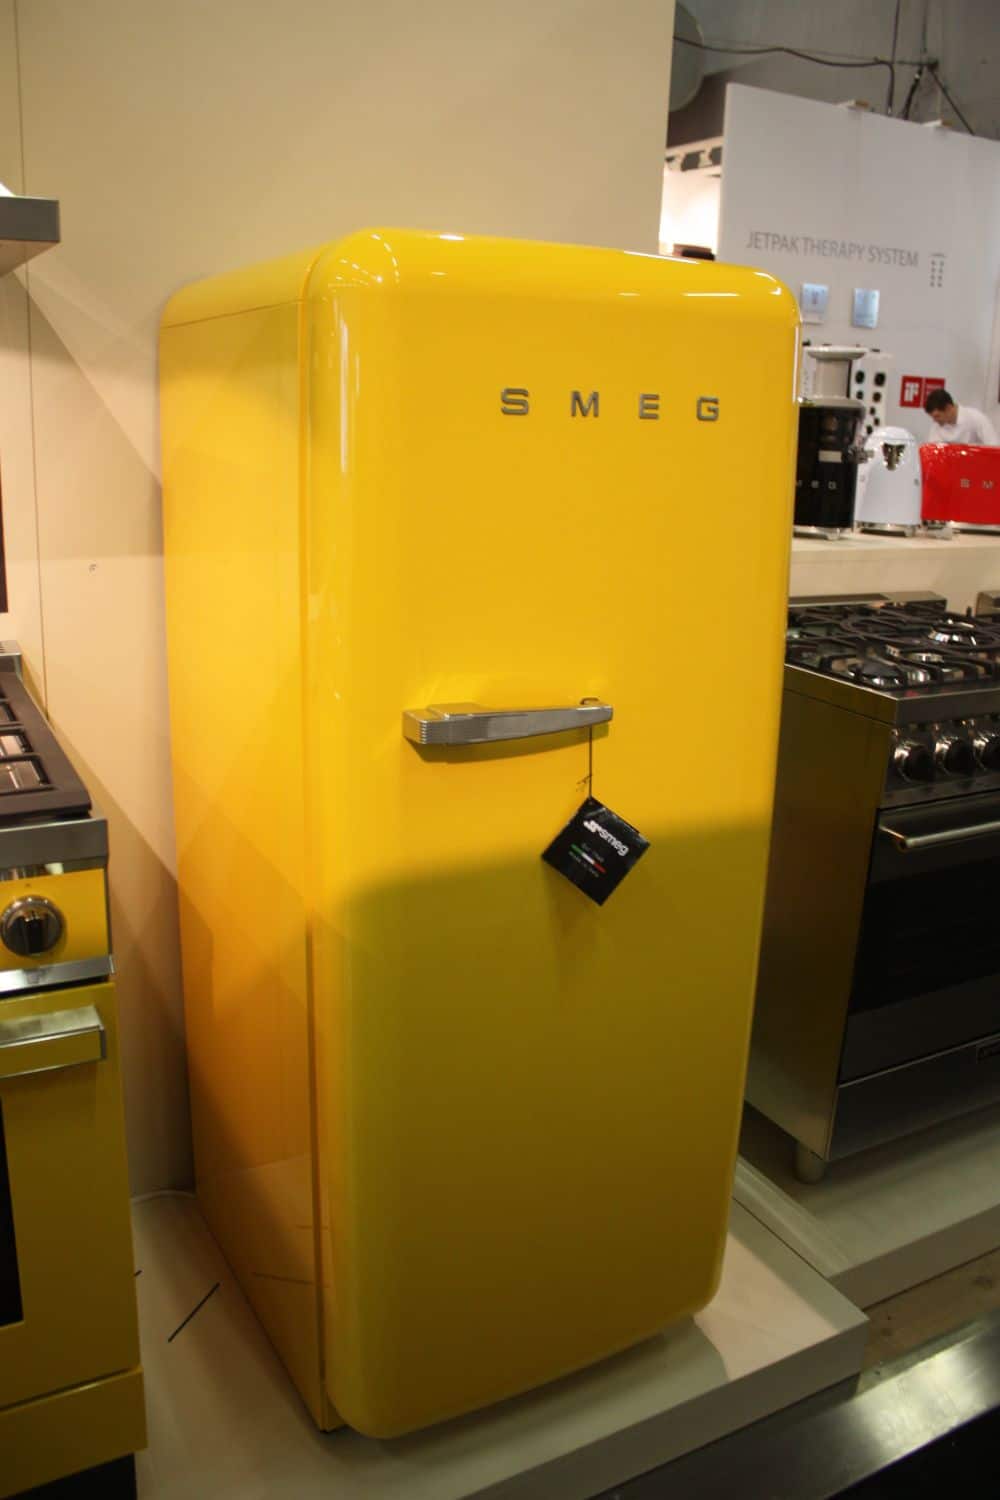 Nous adorons l'aspect gai et ensoleillé de ce réfrigérateur jaune de Smeg. Il illumine toute la pièce.